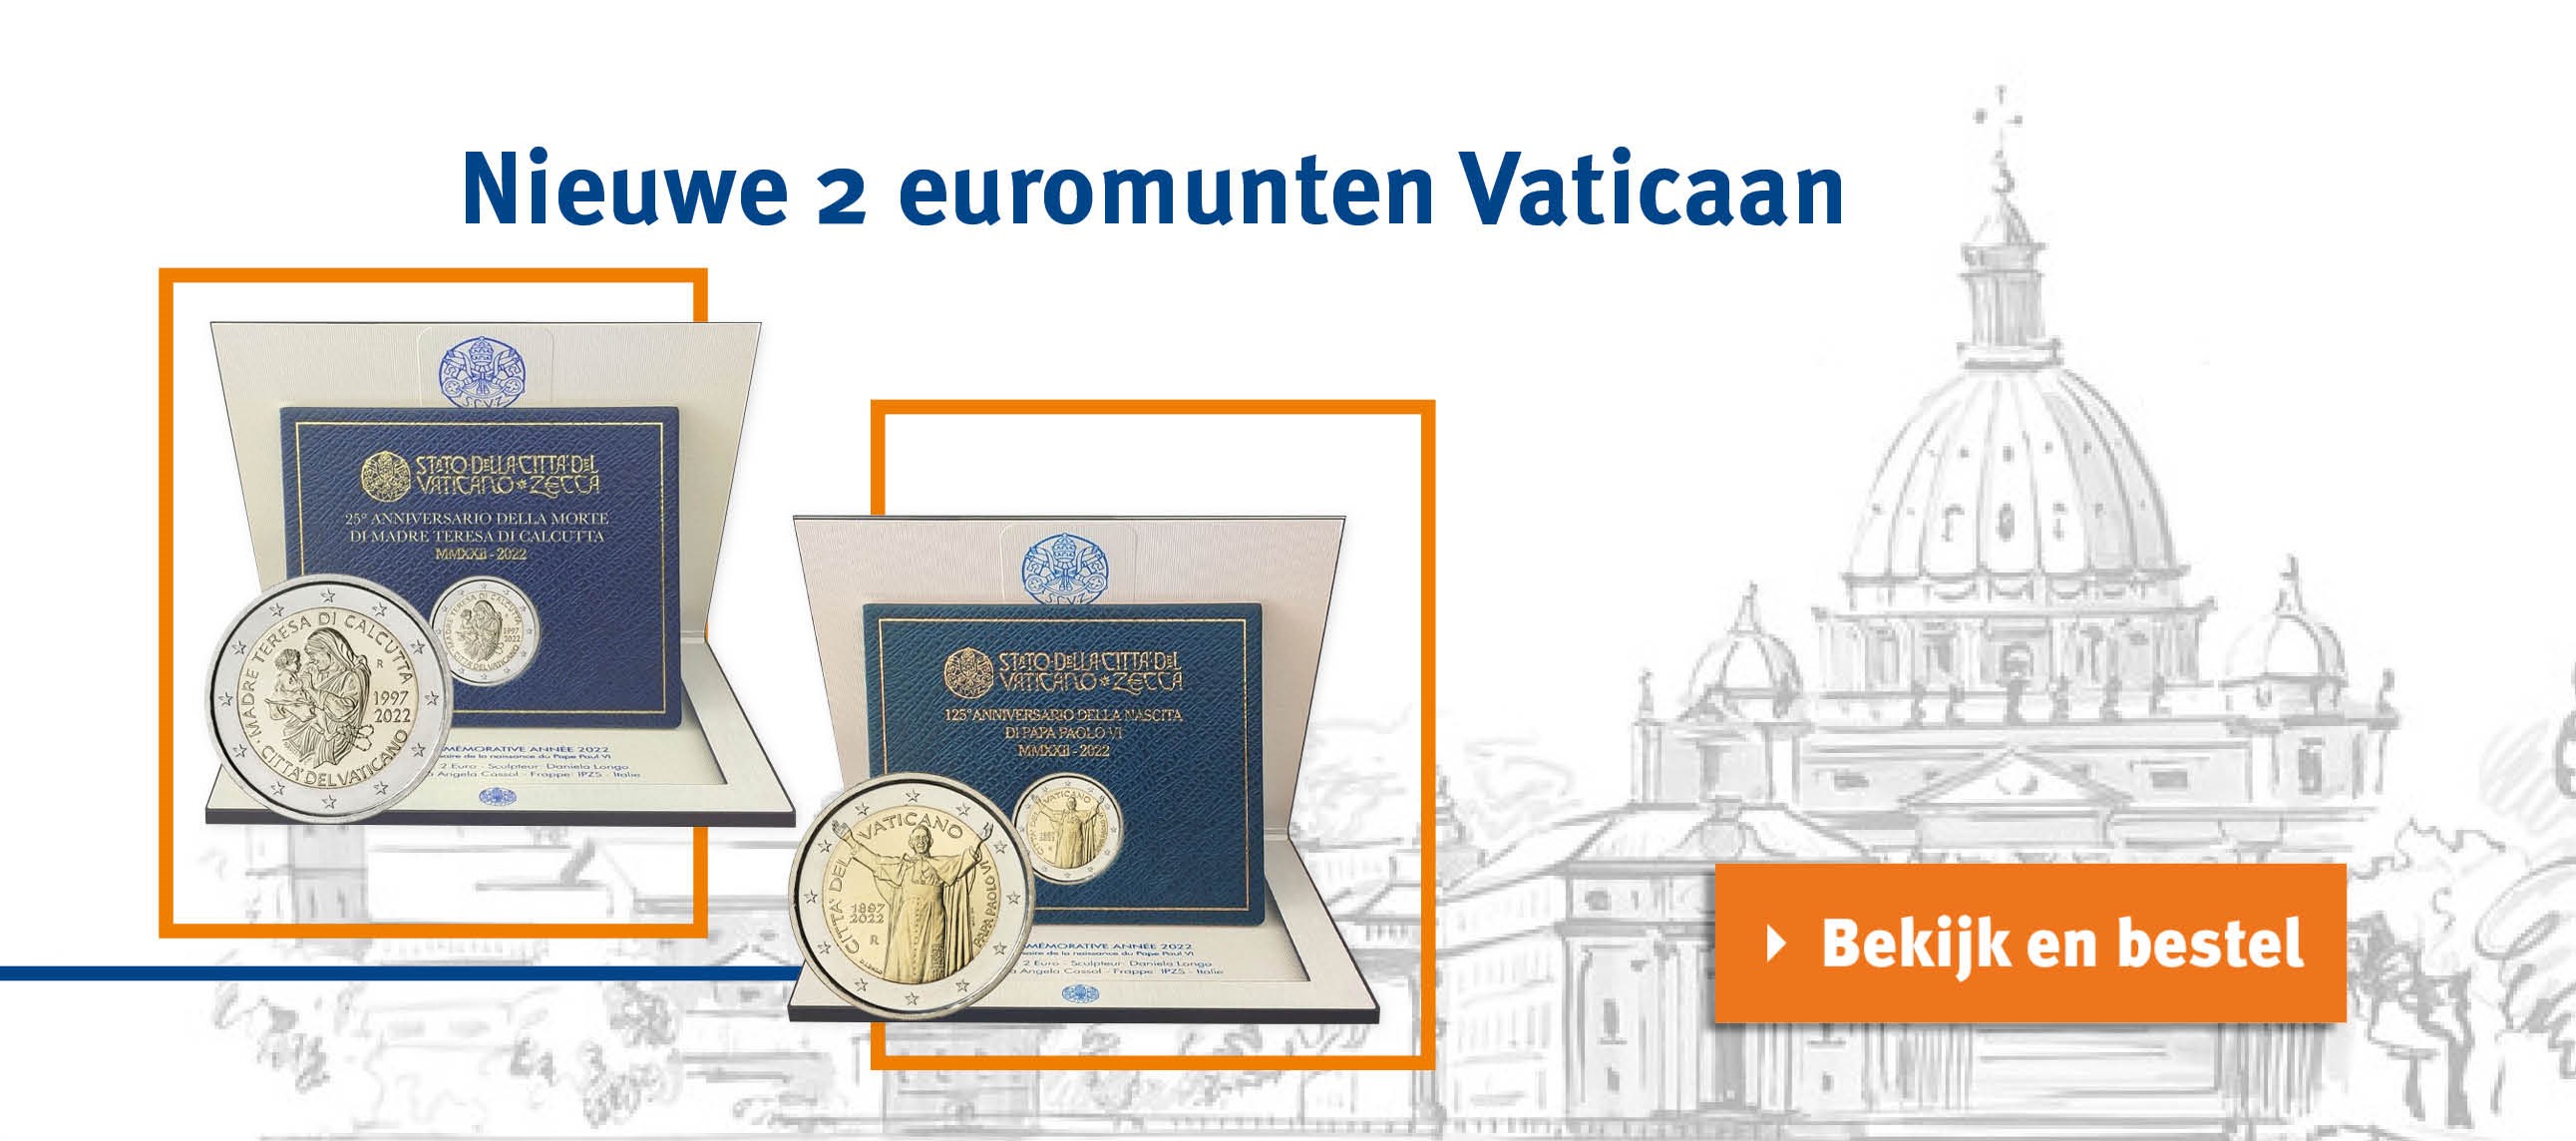 Bekijk en bestel: Nieuwe 2 euromunten Vaticaan